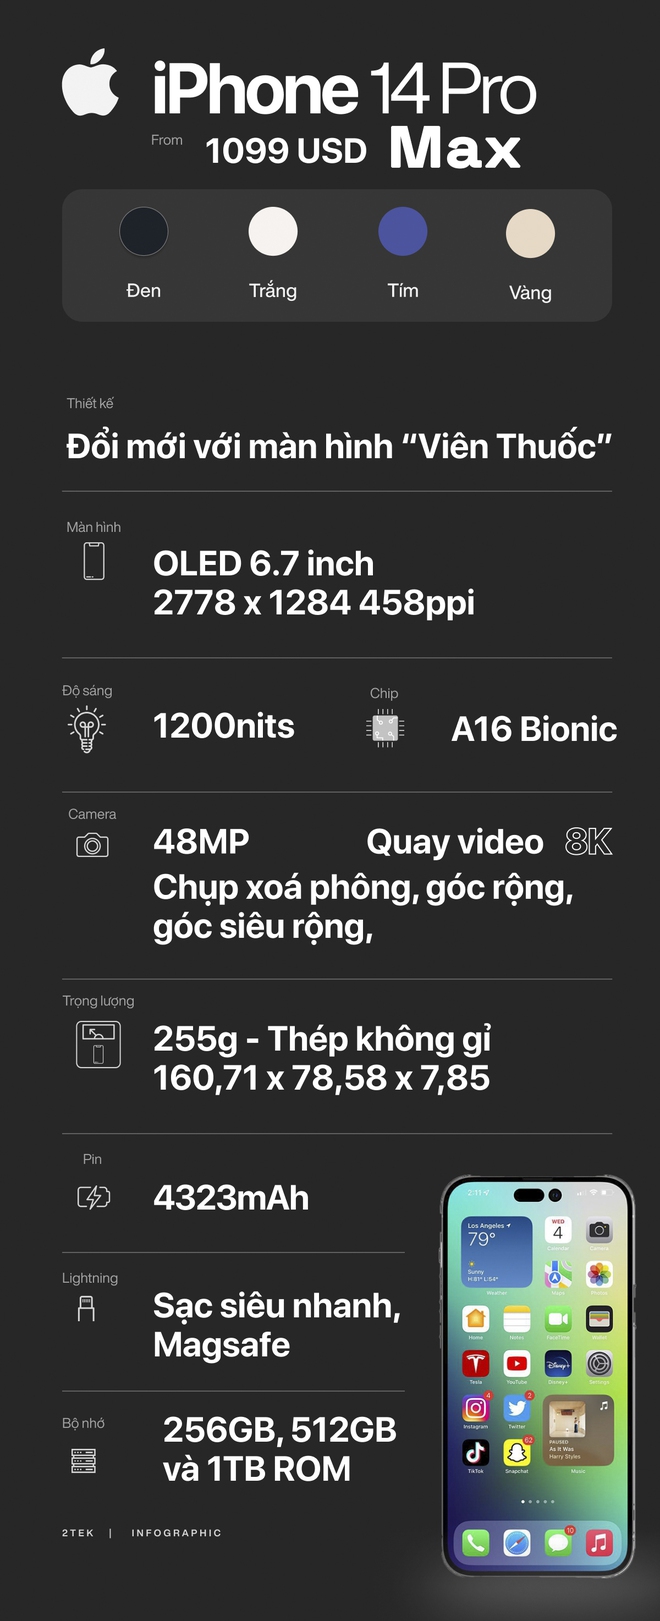 4 mẫu iPhone 14 Apple vừa ra mắt khác nhau như thế nào? - Ảnh 2.